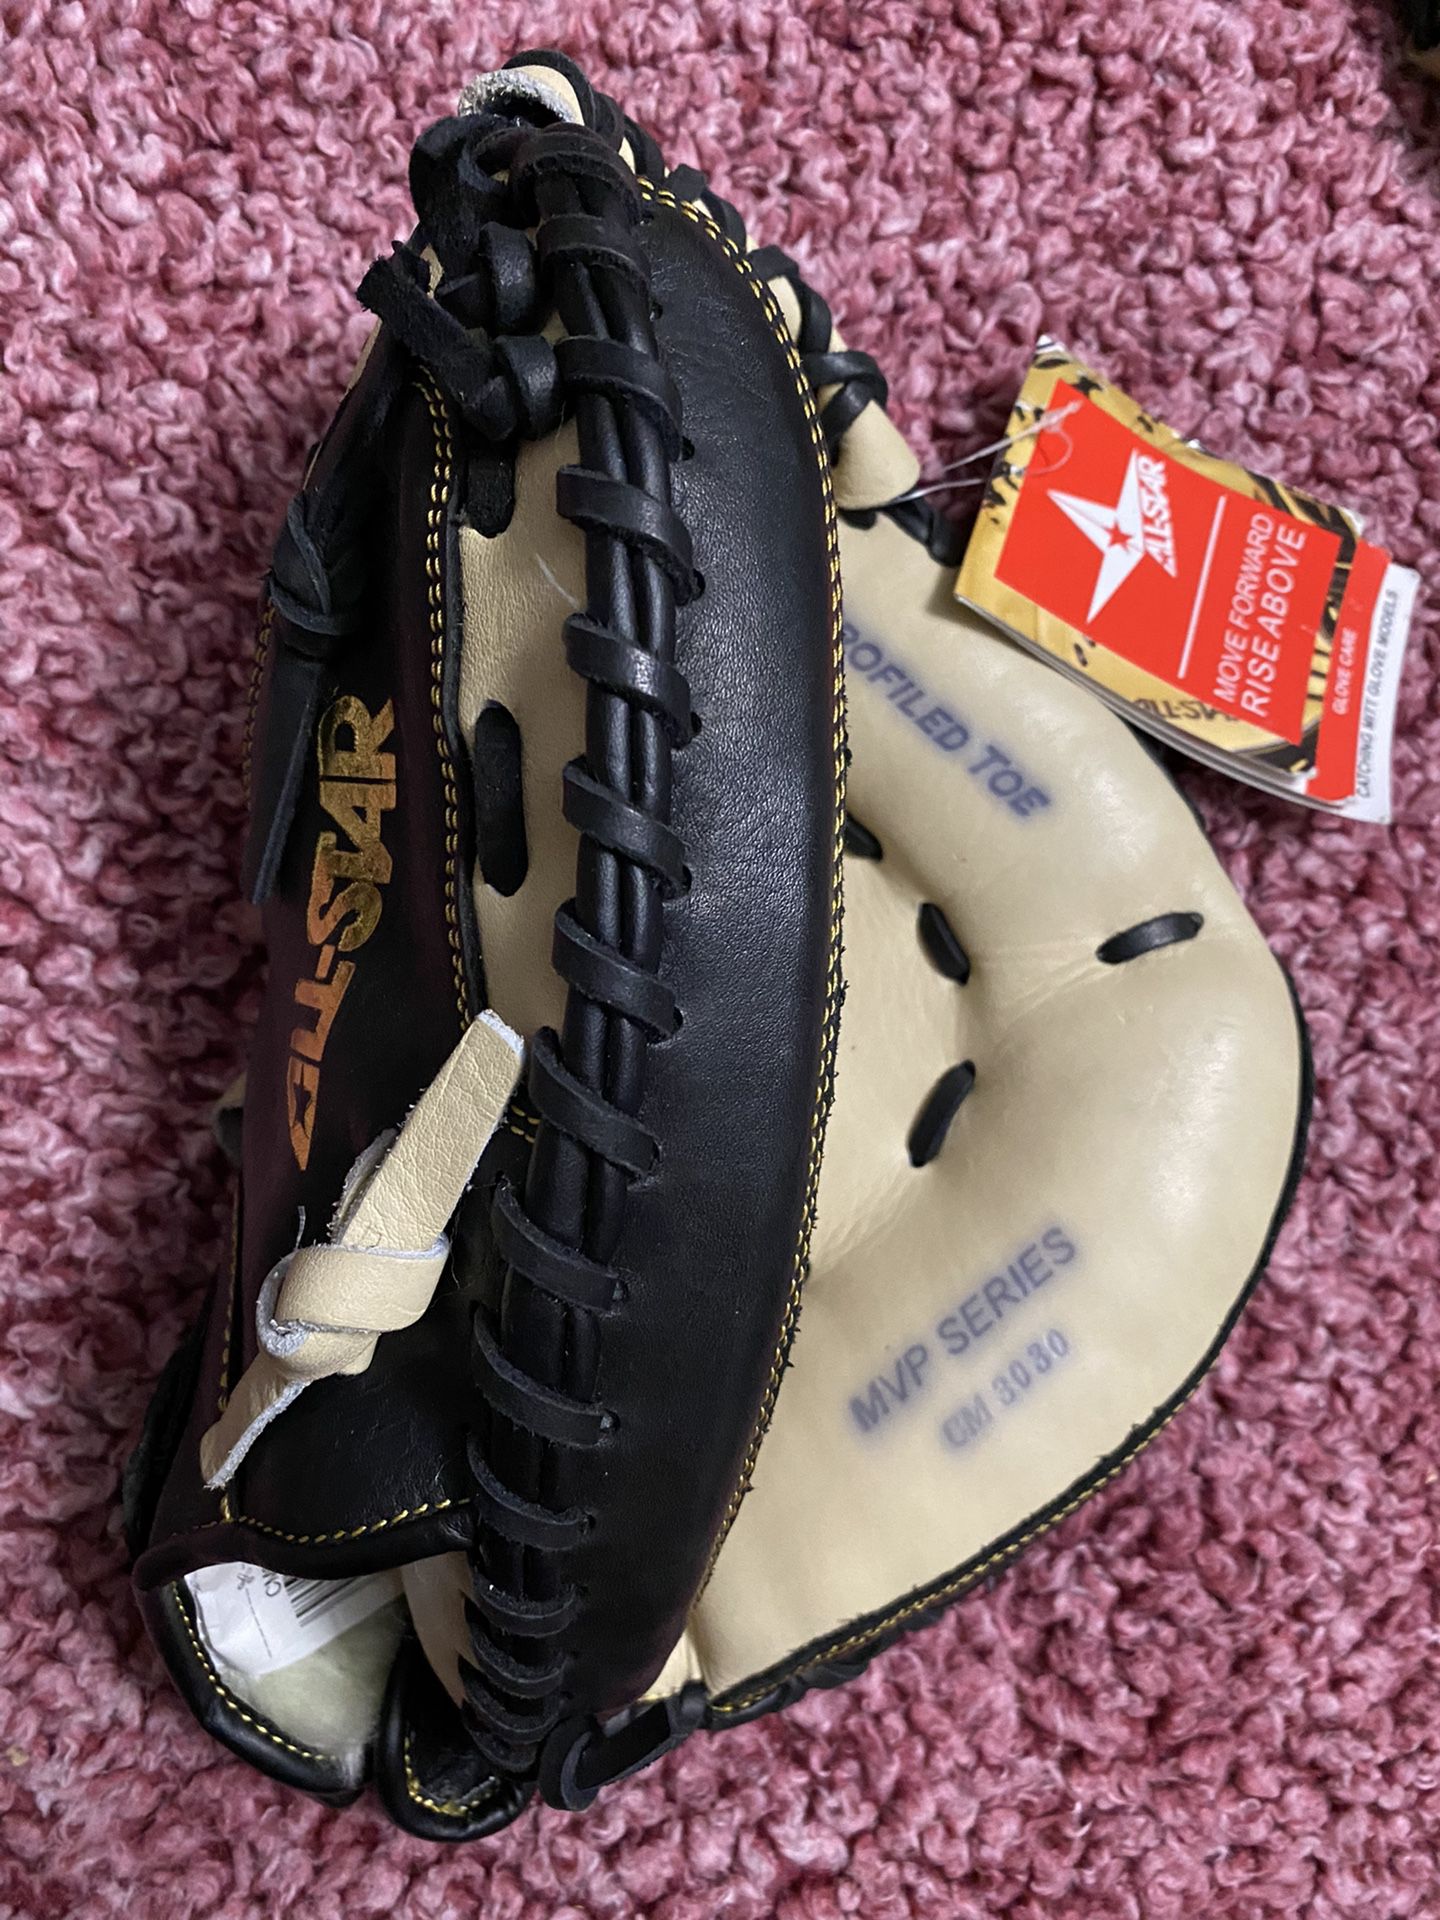 All-Star MVP Baseball Catcher’s Glove 